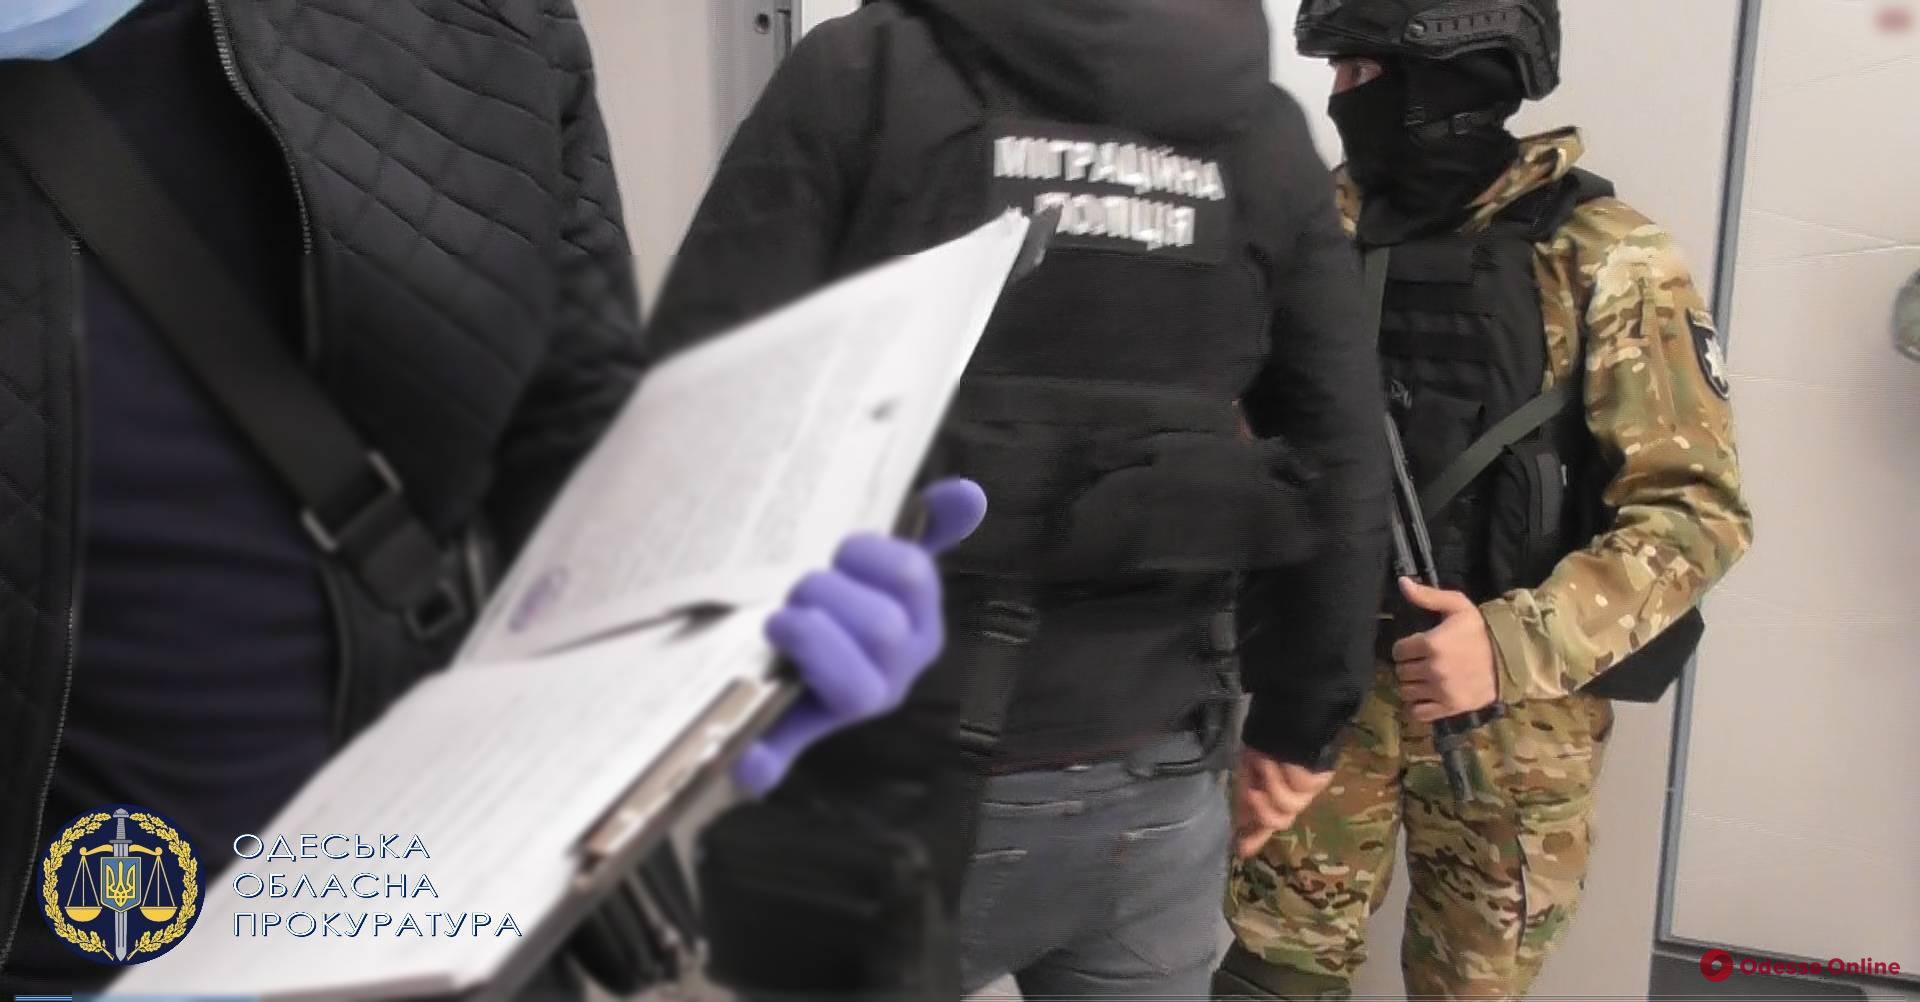 Пытали и требовали деньги: в Одессе завершено расследование по делу банды, похитившей двух граждан Греции